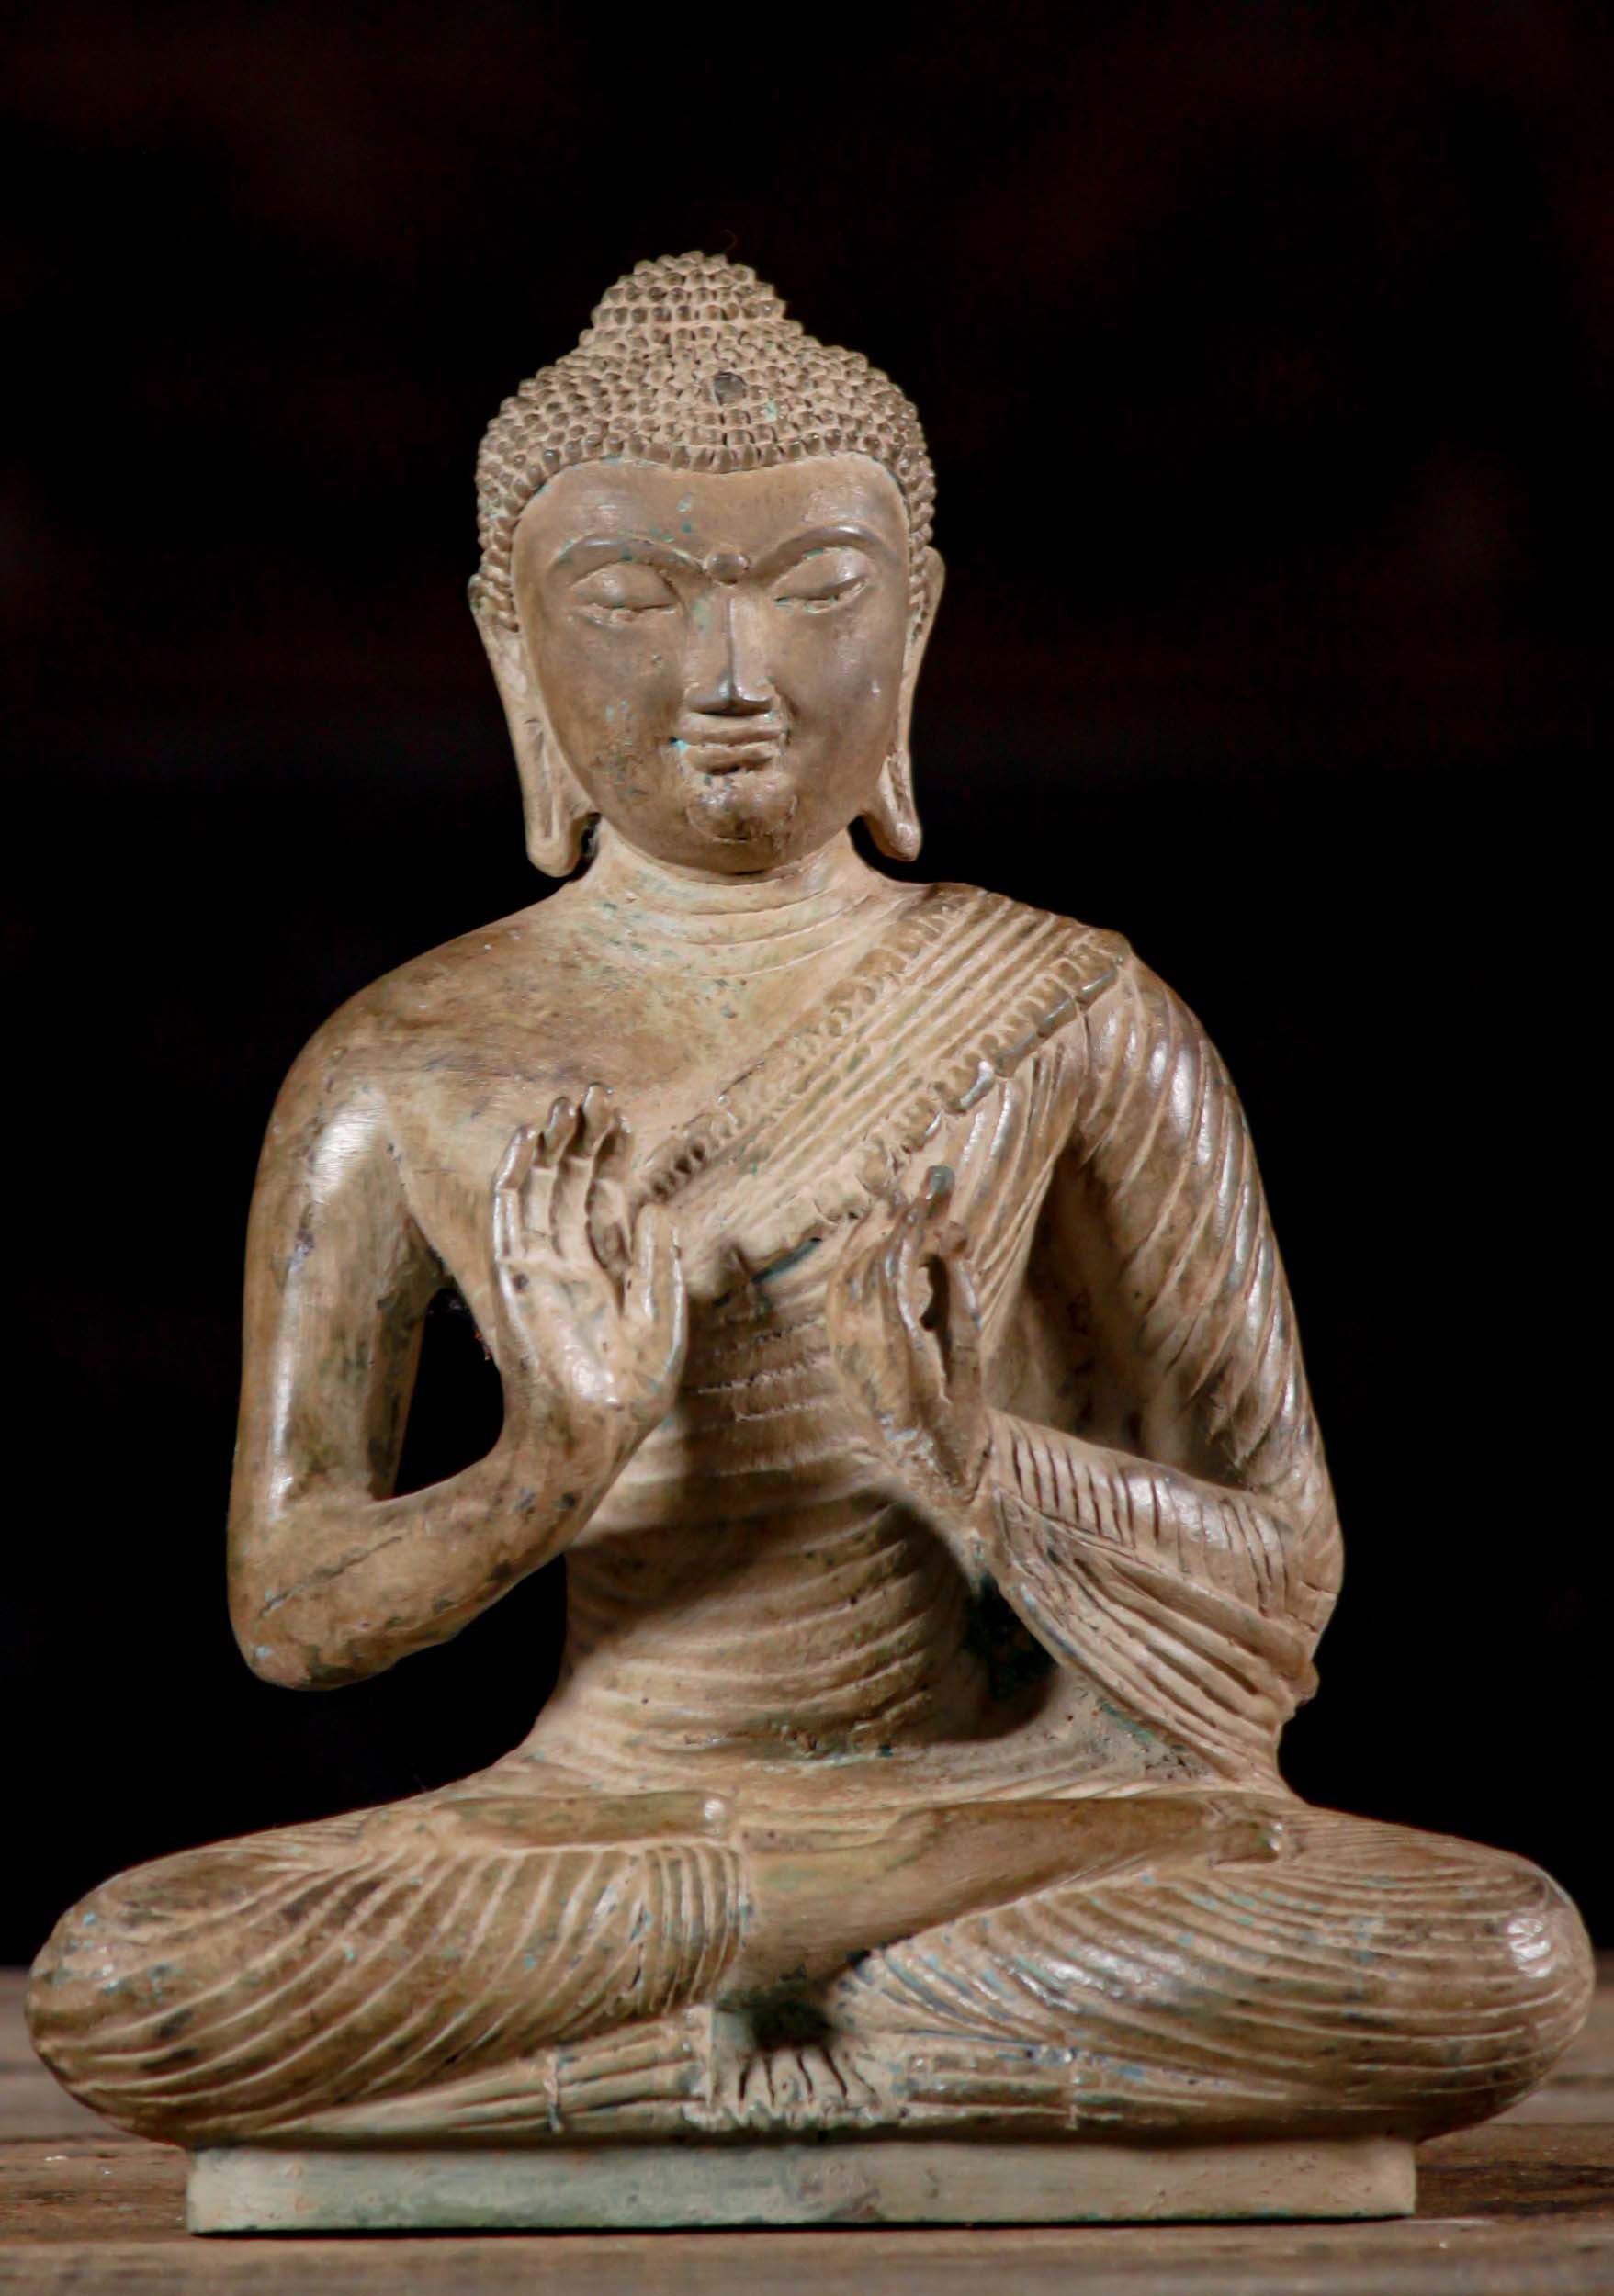 Brass Dharmachakra Mudra Teaching Buddha Statue In The Full Lotus